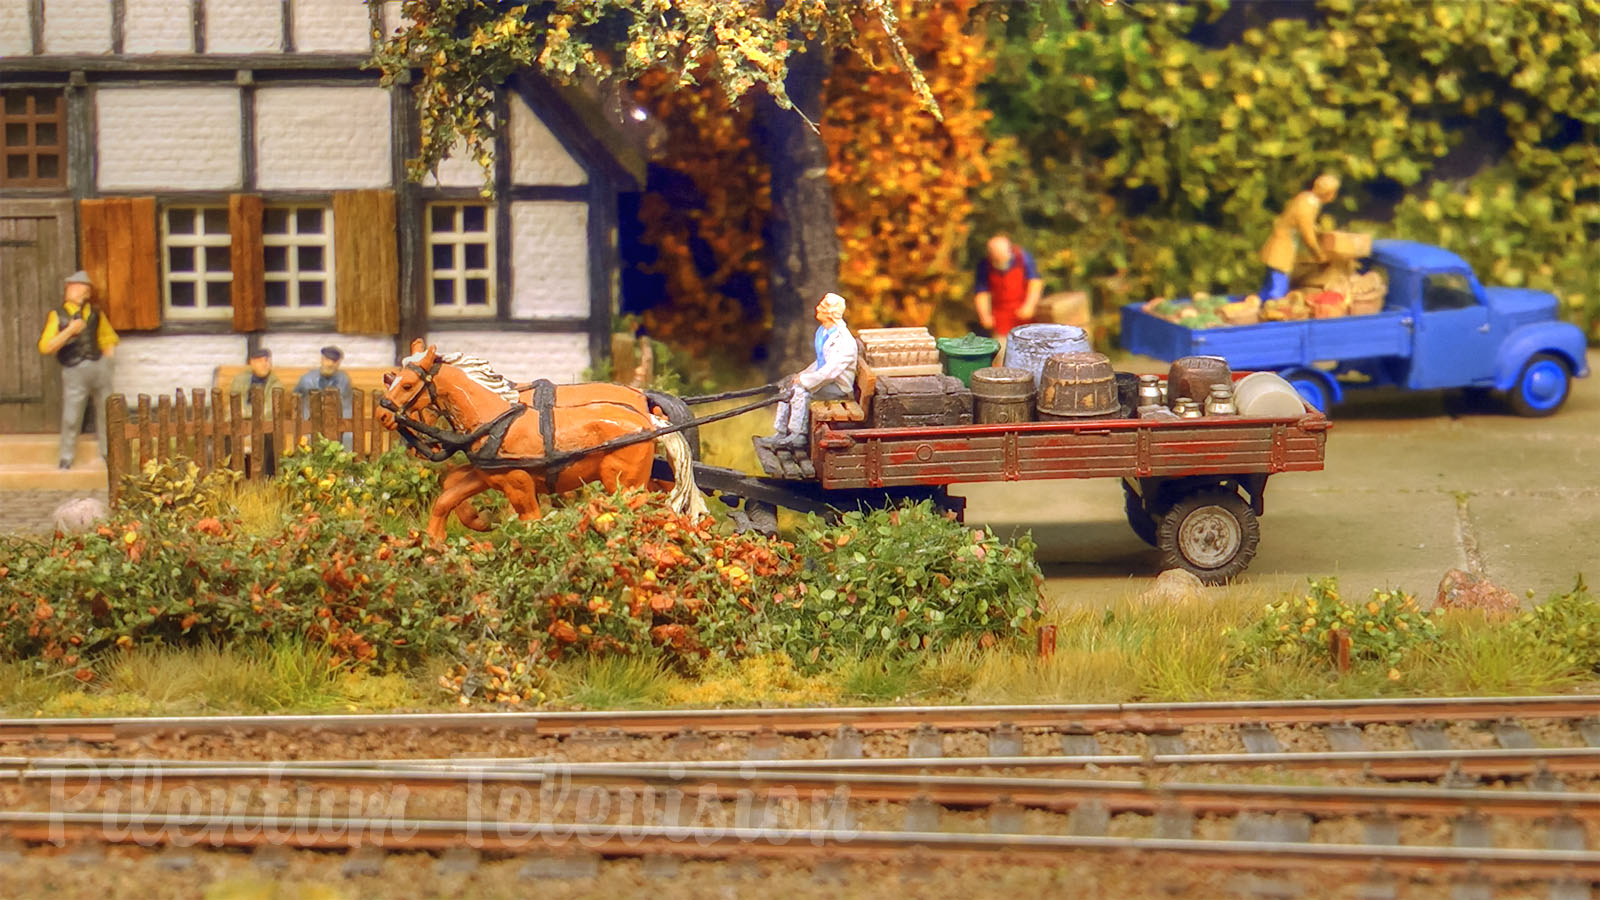 Smuk modeljernbane med gamle damplokomotiver og damptog fra Nordtyskland